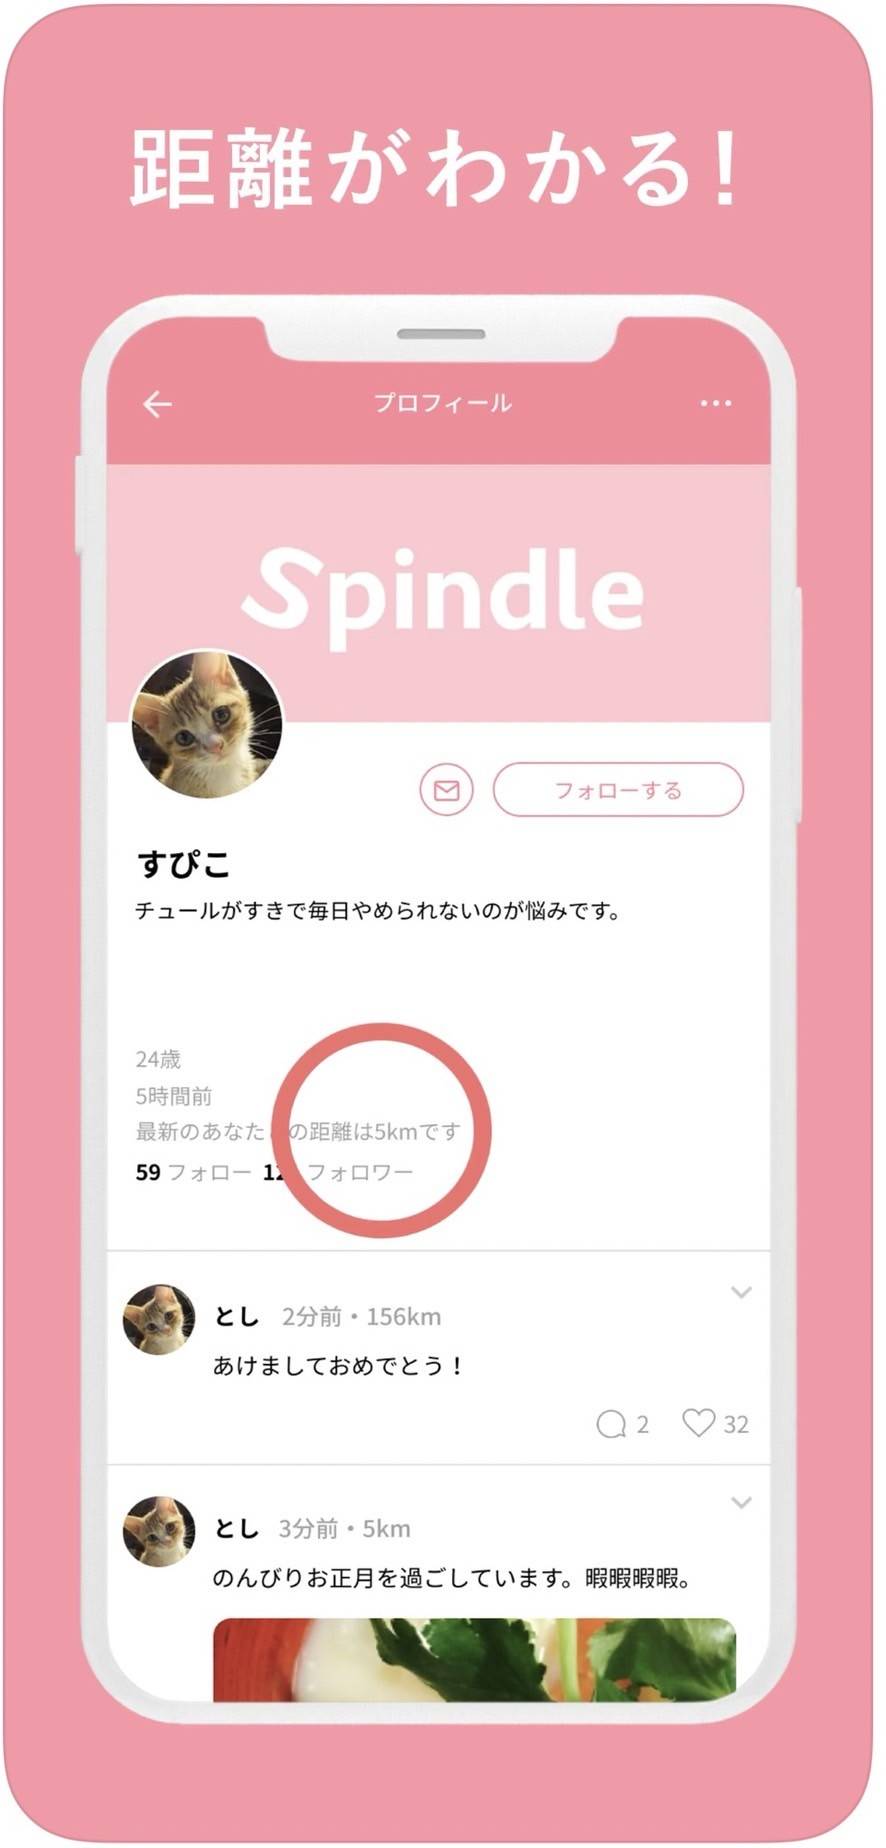 「Spindle」のイメージ画像